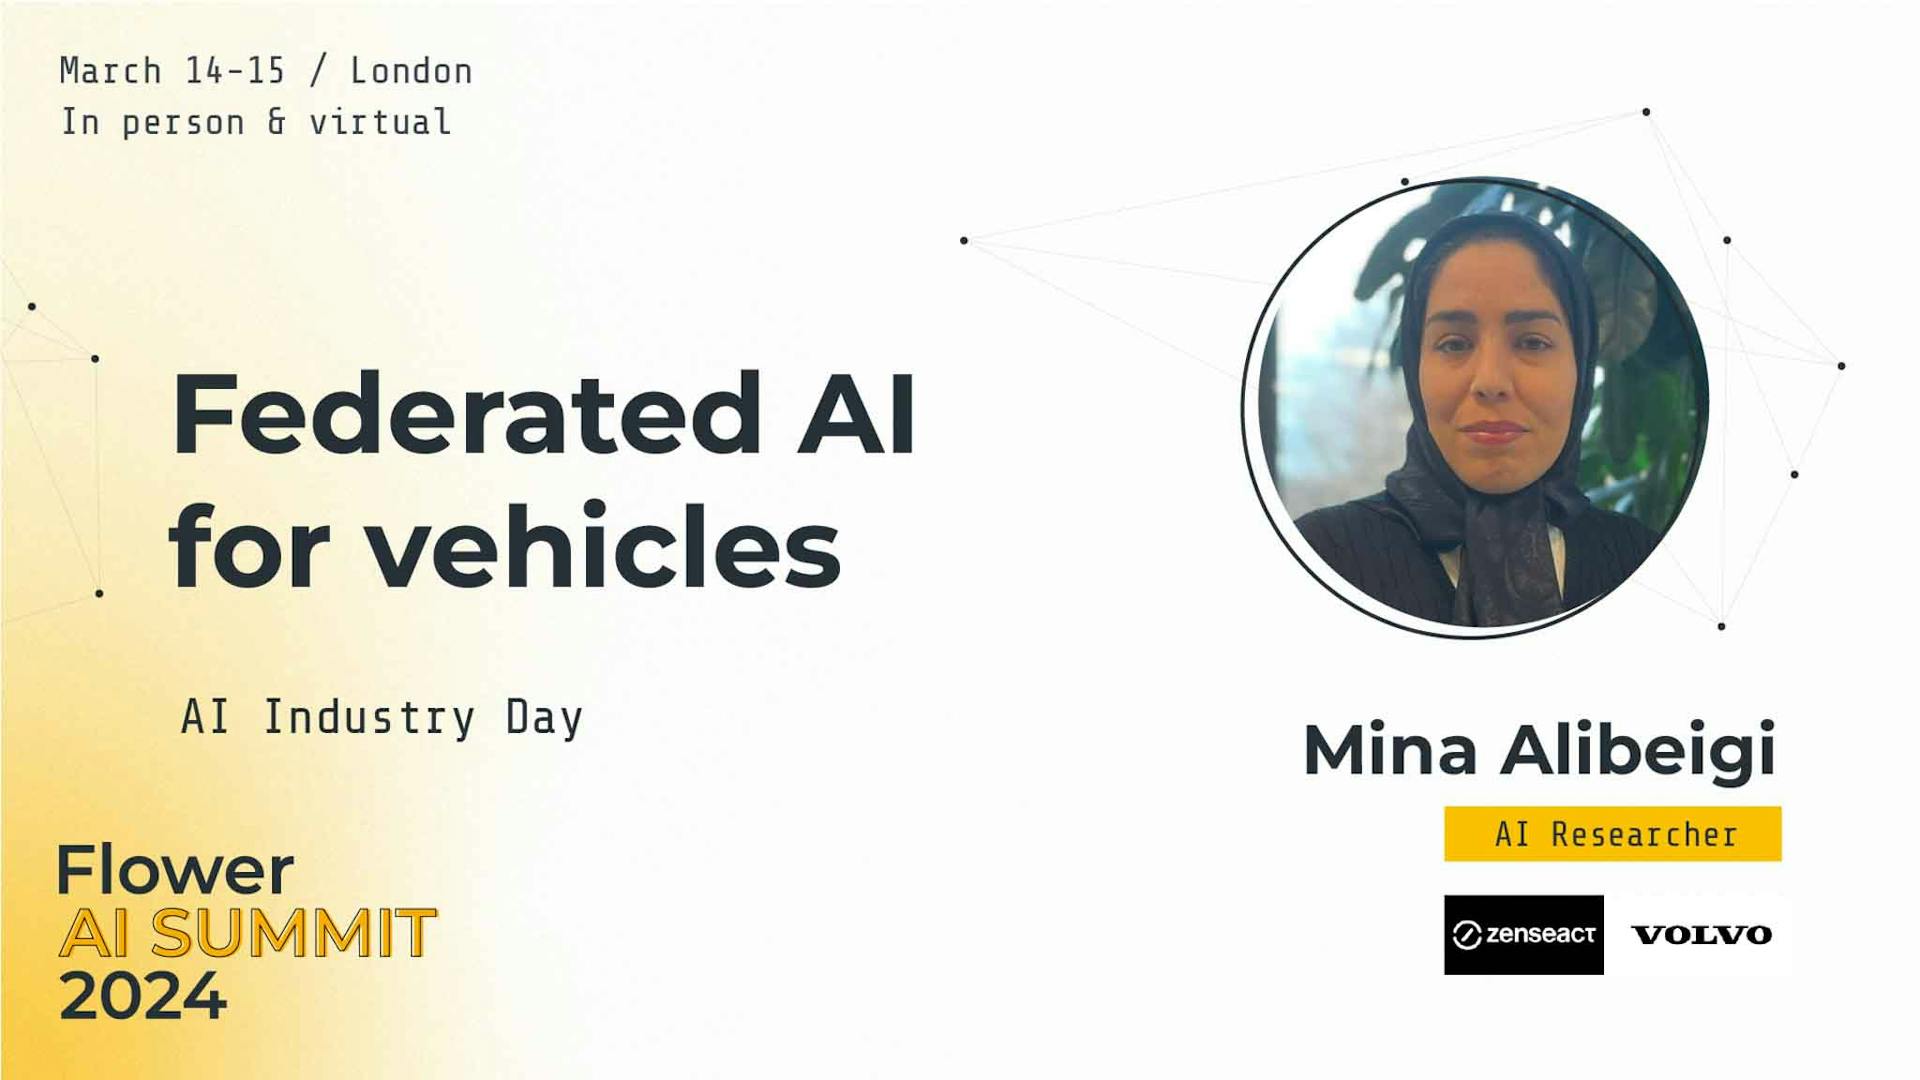 Federated AI for vehicles, by Mina Alibeigi